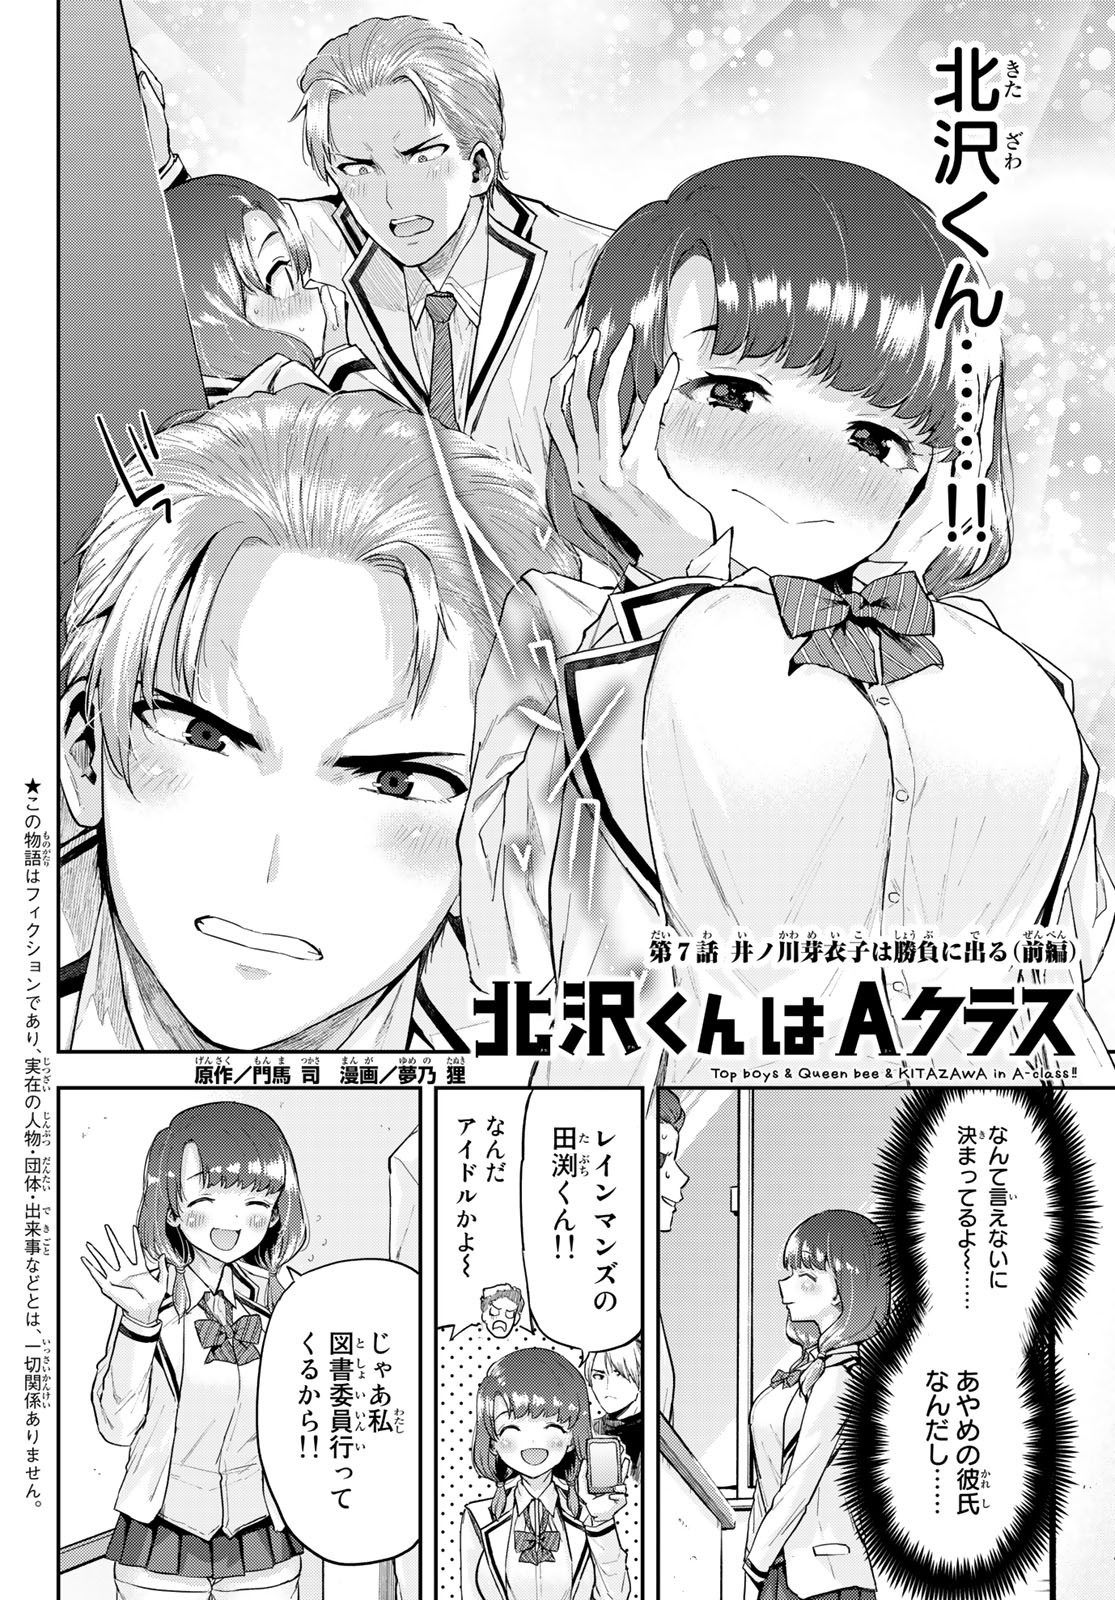 Kitazawa-kun wa A Class - Chapter 007 - Page 2